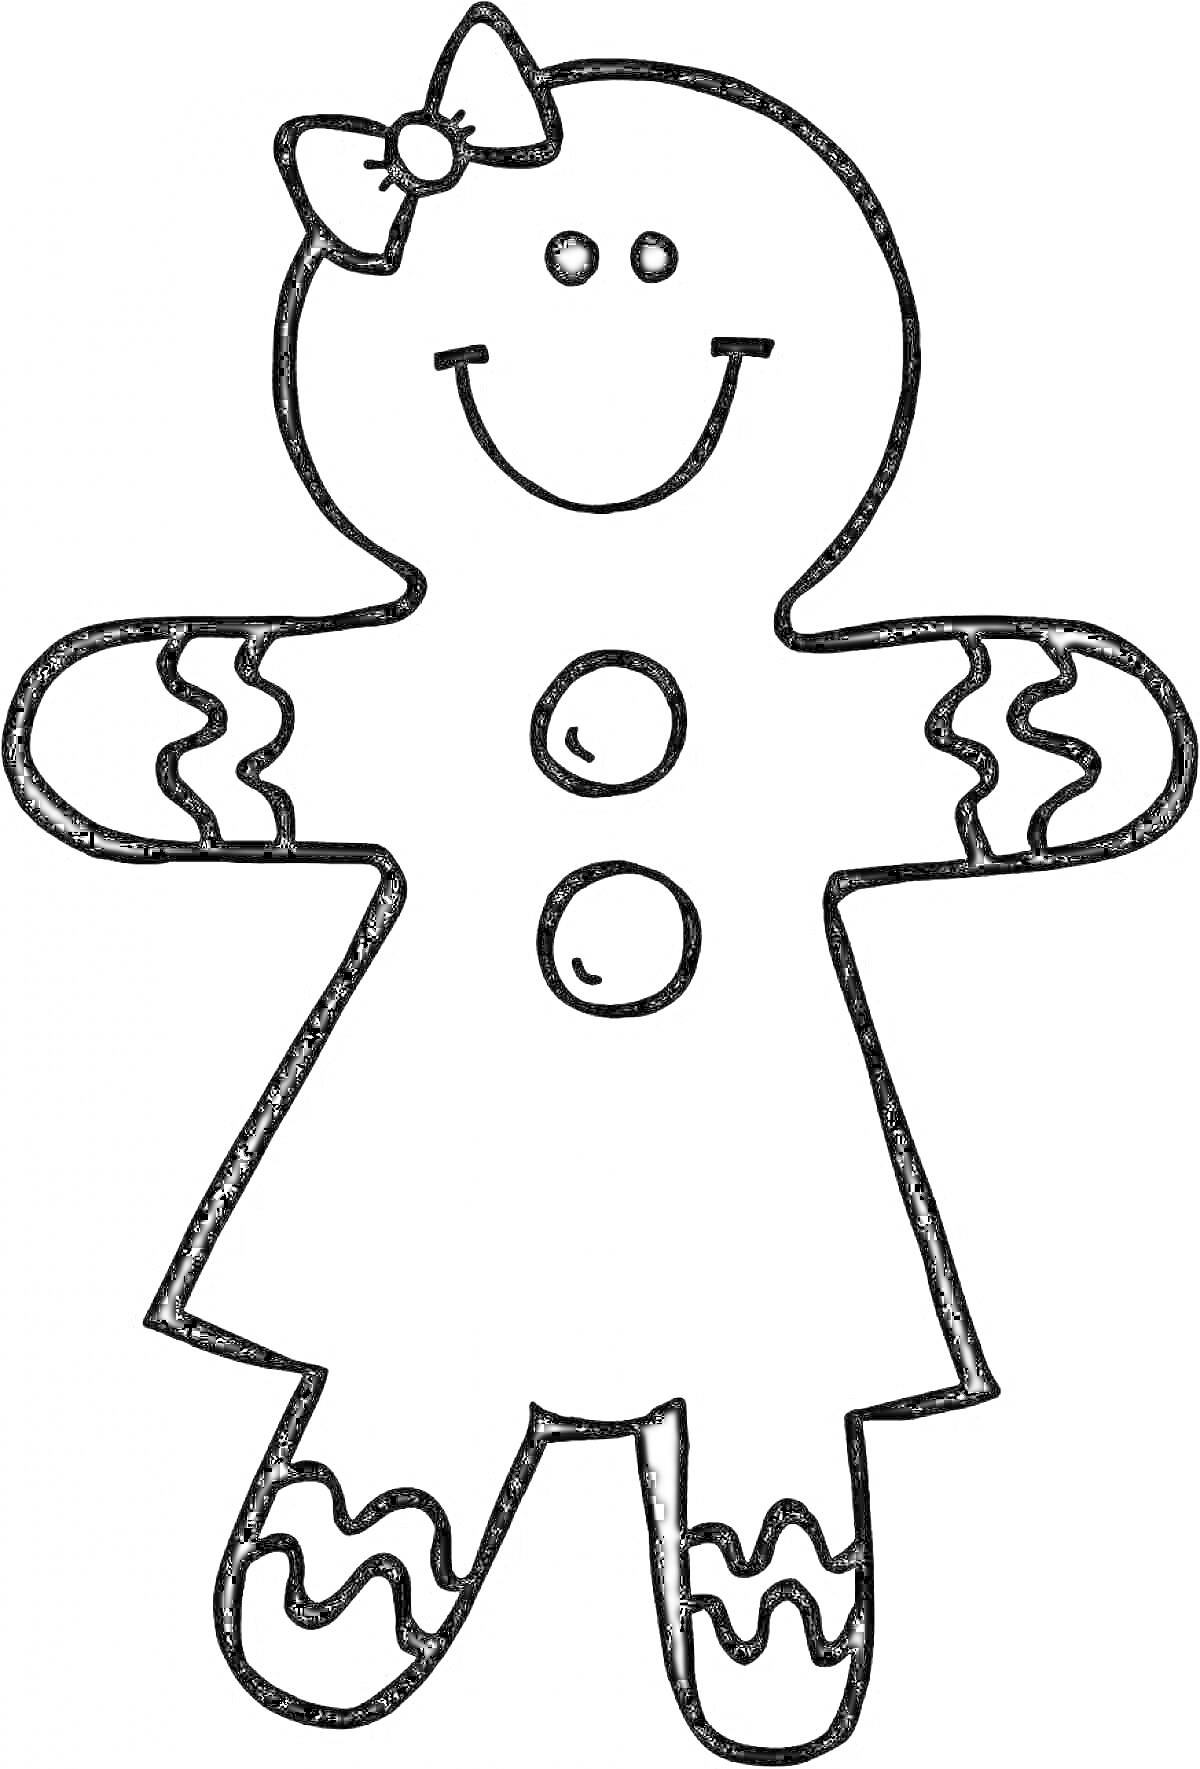 Раскраска Девочка-пряничный человечек с бантиком, двумя пуговицами и украшениями на руках и ногах